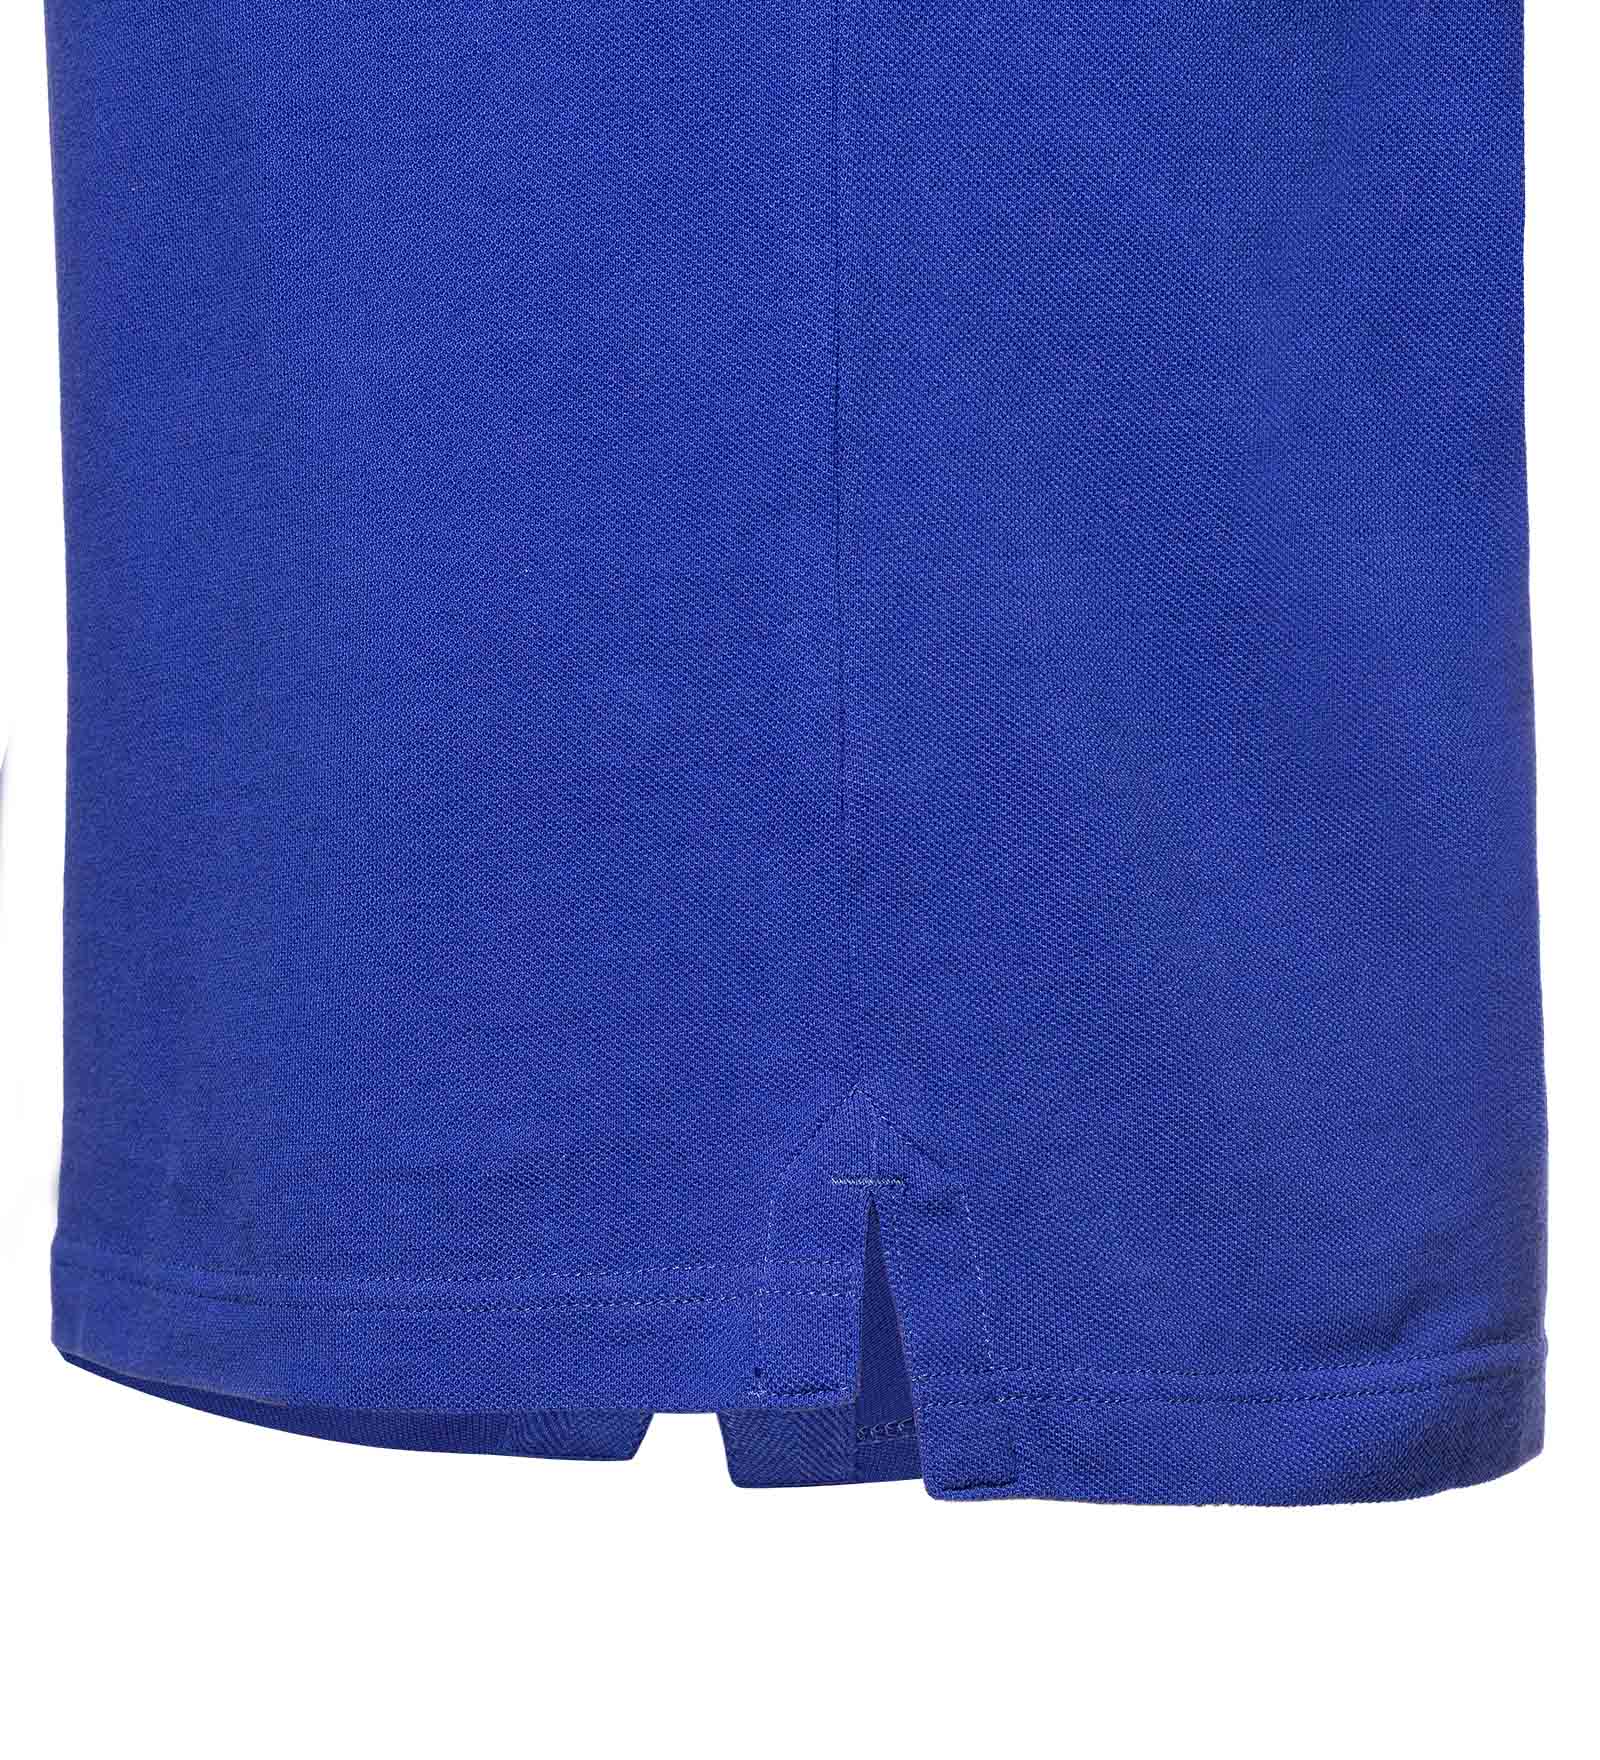 Tennis tail blue polo shirt